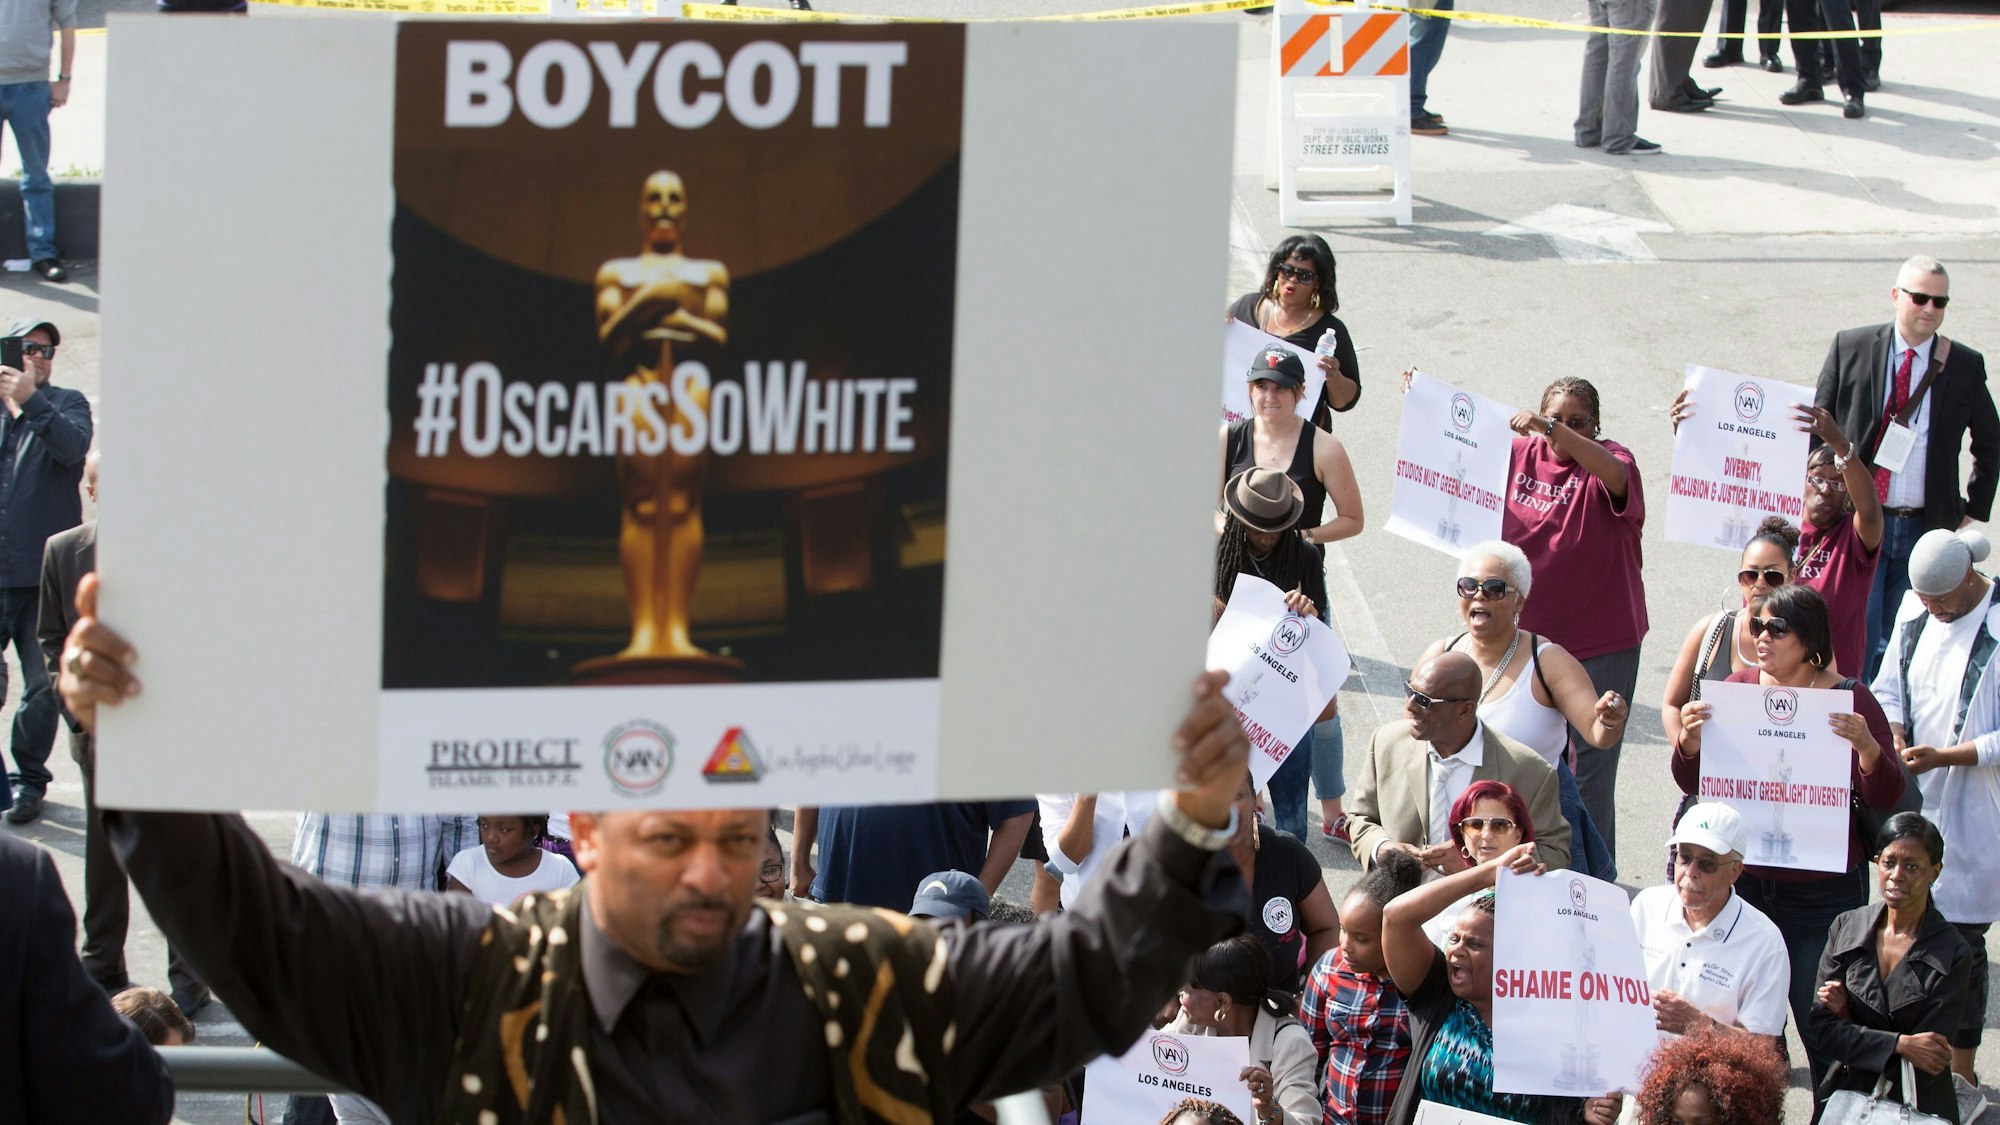 Ein Demonstrant hält ein Plakat mit der Aufschrift „Boycott“ und „#OscarsSoWhite“ während einer Demonstration gegen die Nominierung vorwiegend weißer Schauspielerinnen und Schauspieler für die Oscars 2016 hoch.